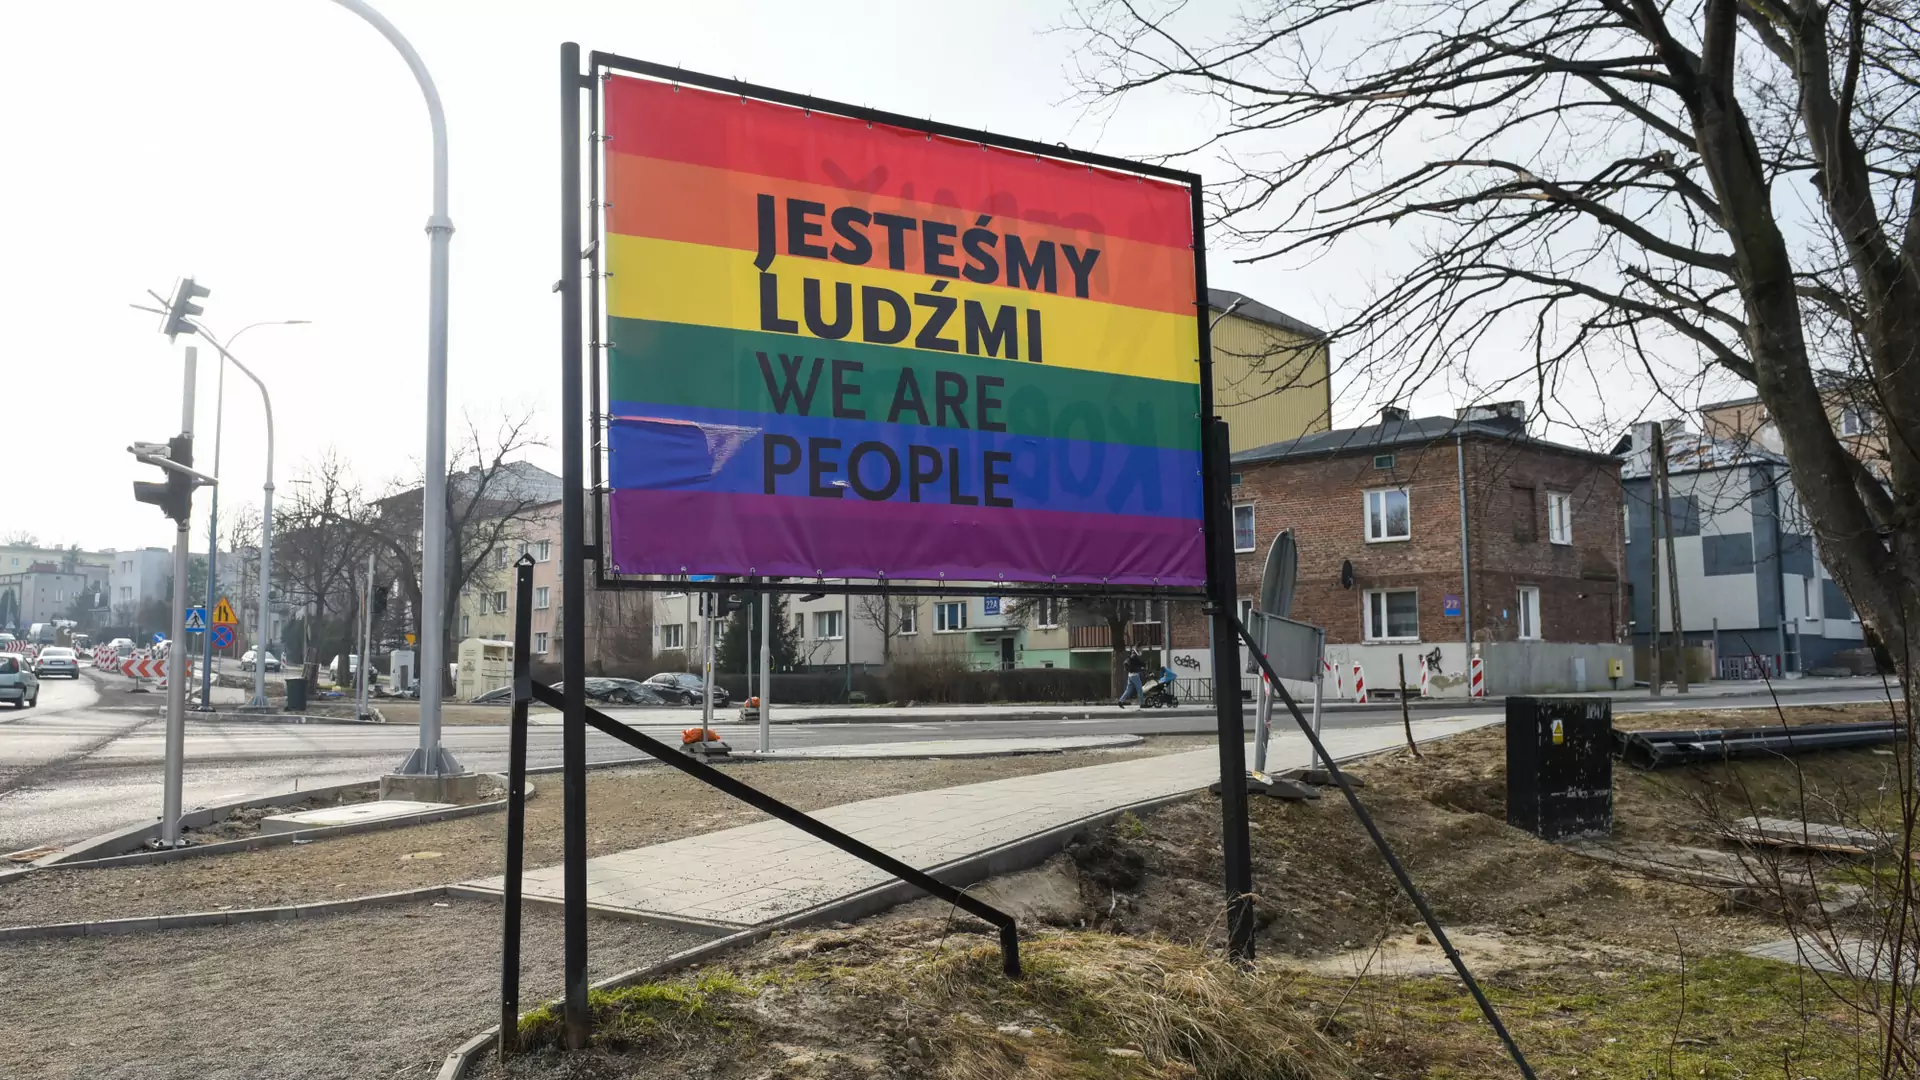 Radni z Mielca zagłosują nad uchyleniem uchwały anty-LGBT. Na jej miejsce inna, też homofobiczna